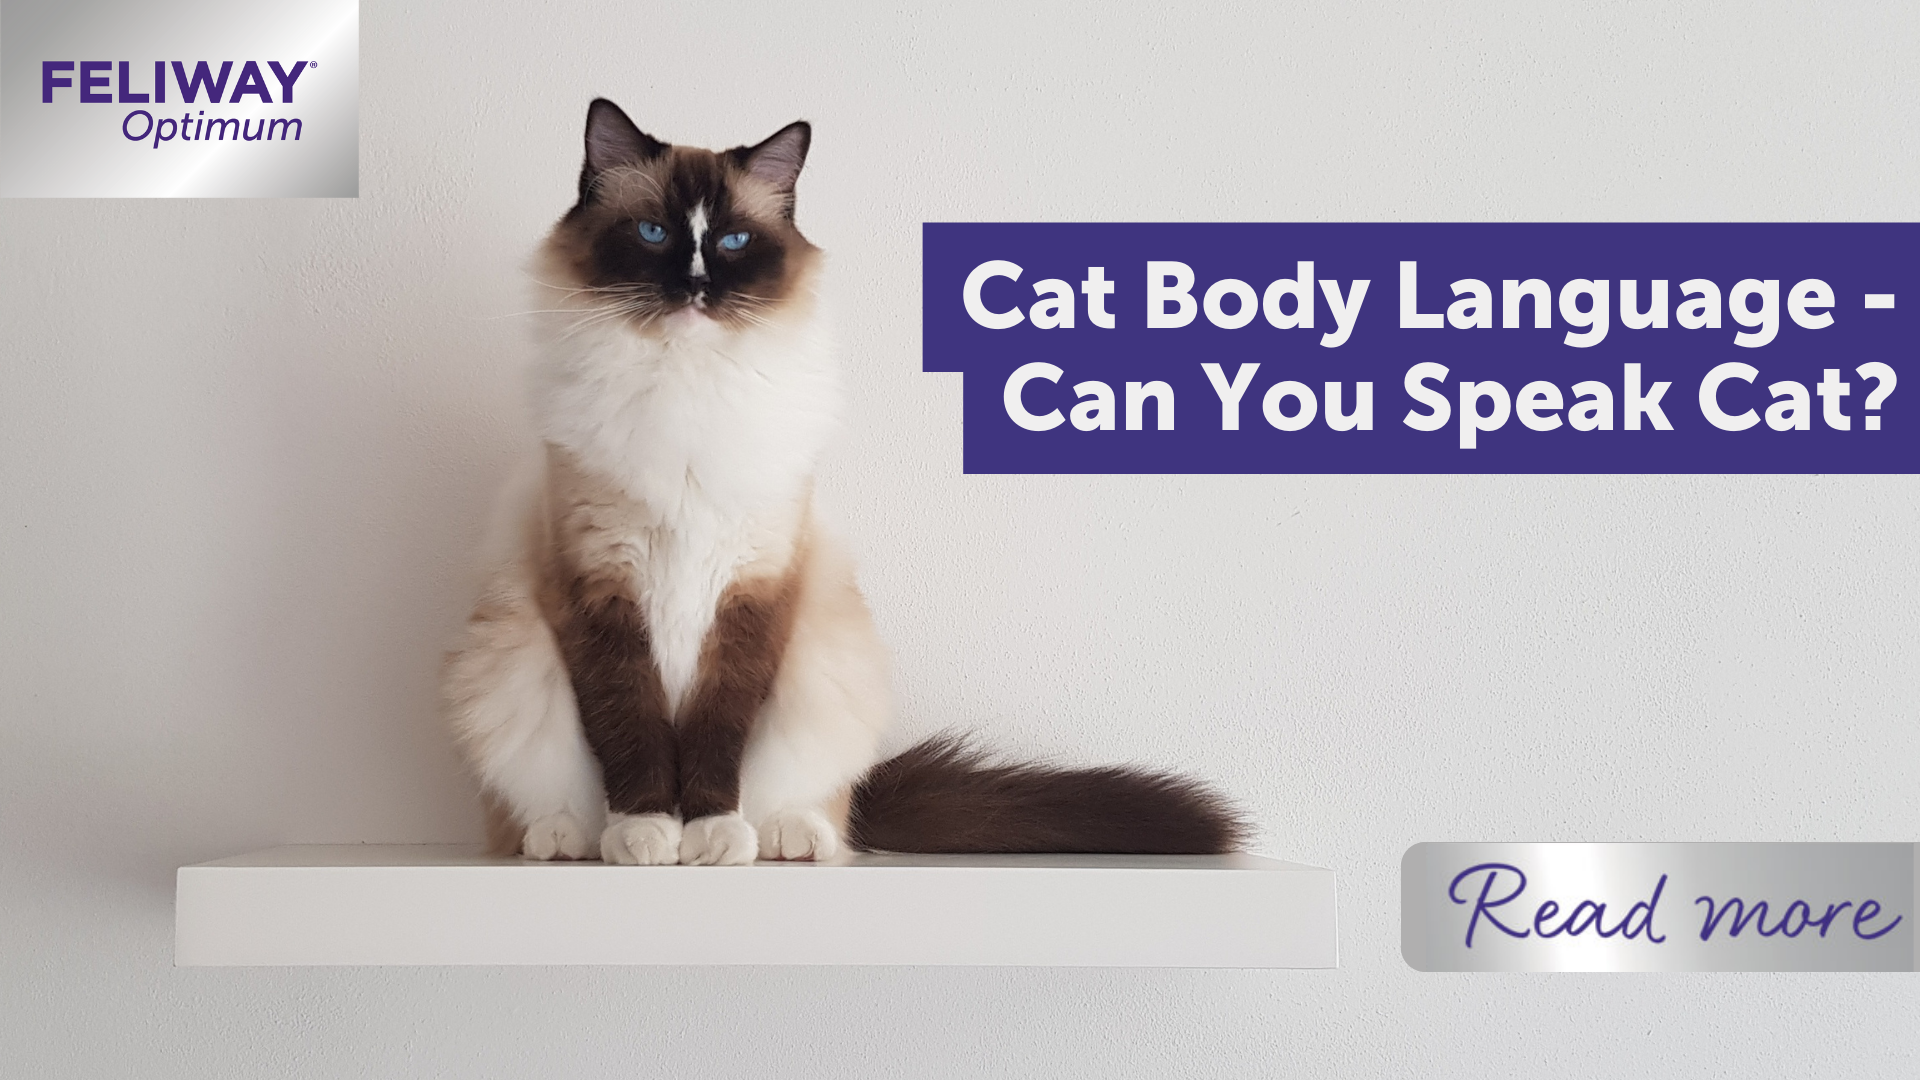 Cat Body Language - Can You Speak Cat?